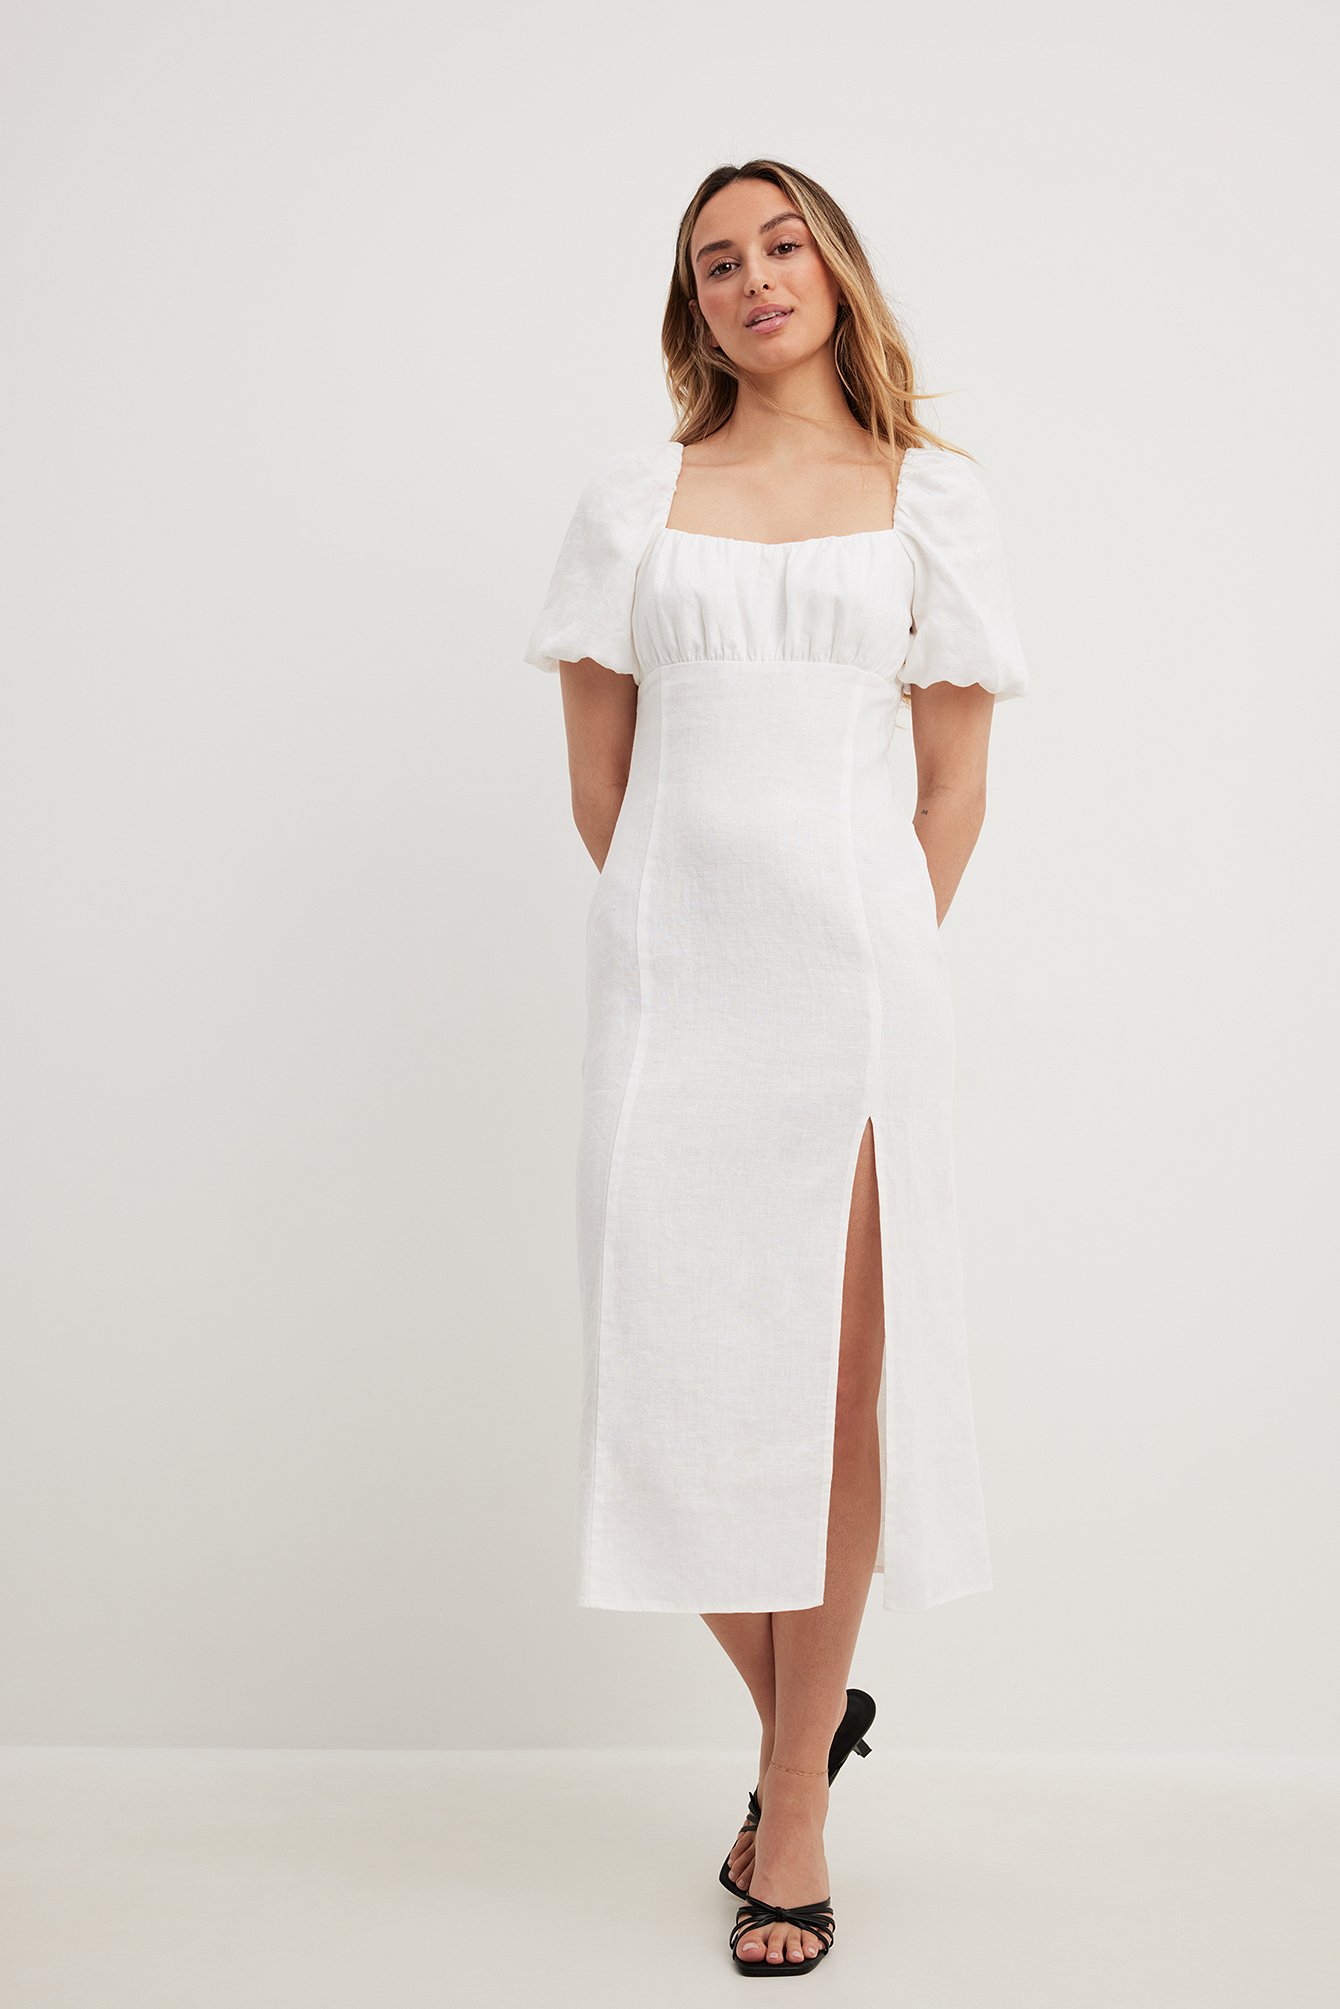 I've Got Sunshine Puff Sleeve Mini Dress White | Mini dress with sleeves,  White mini dress, Mini dress